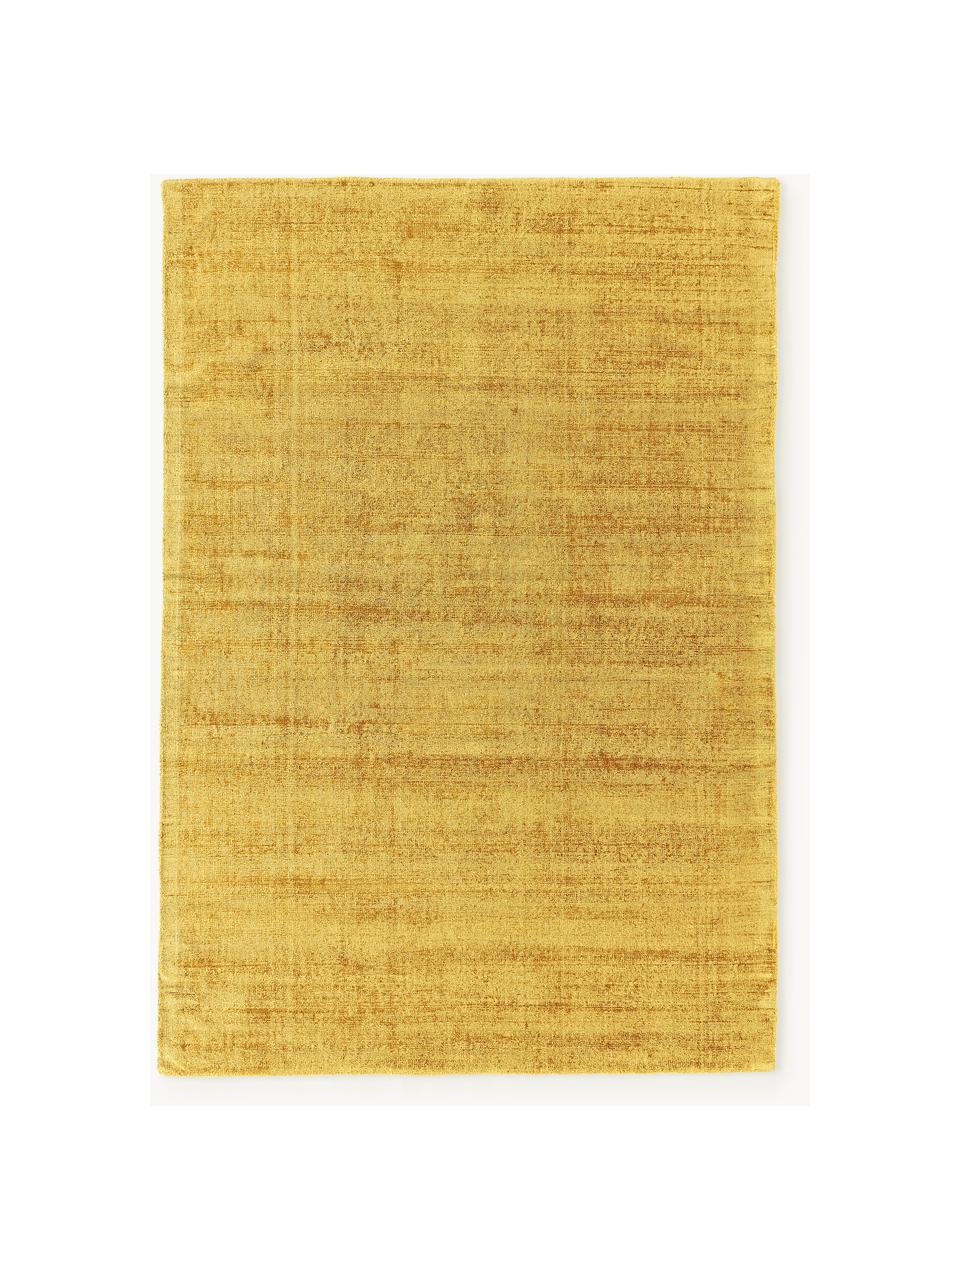 Handgeweven viscose vloerkleed Jane, Onderzijde: 100% katoen, Zonnengeel, B 200 x L 300 cm (maat L)